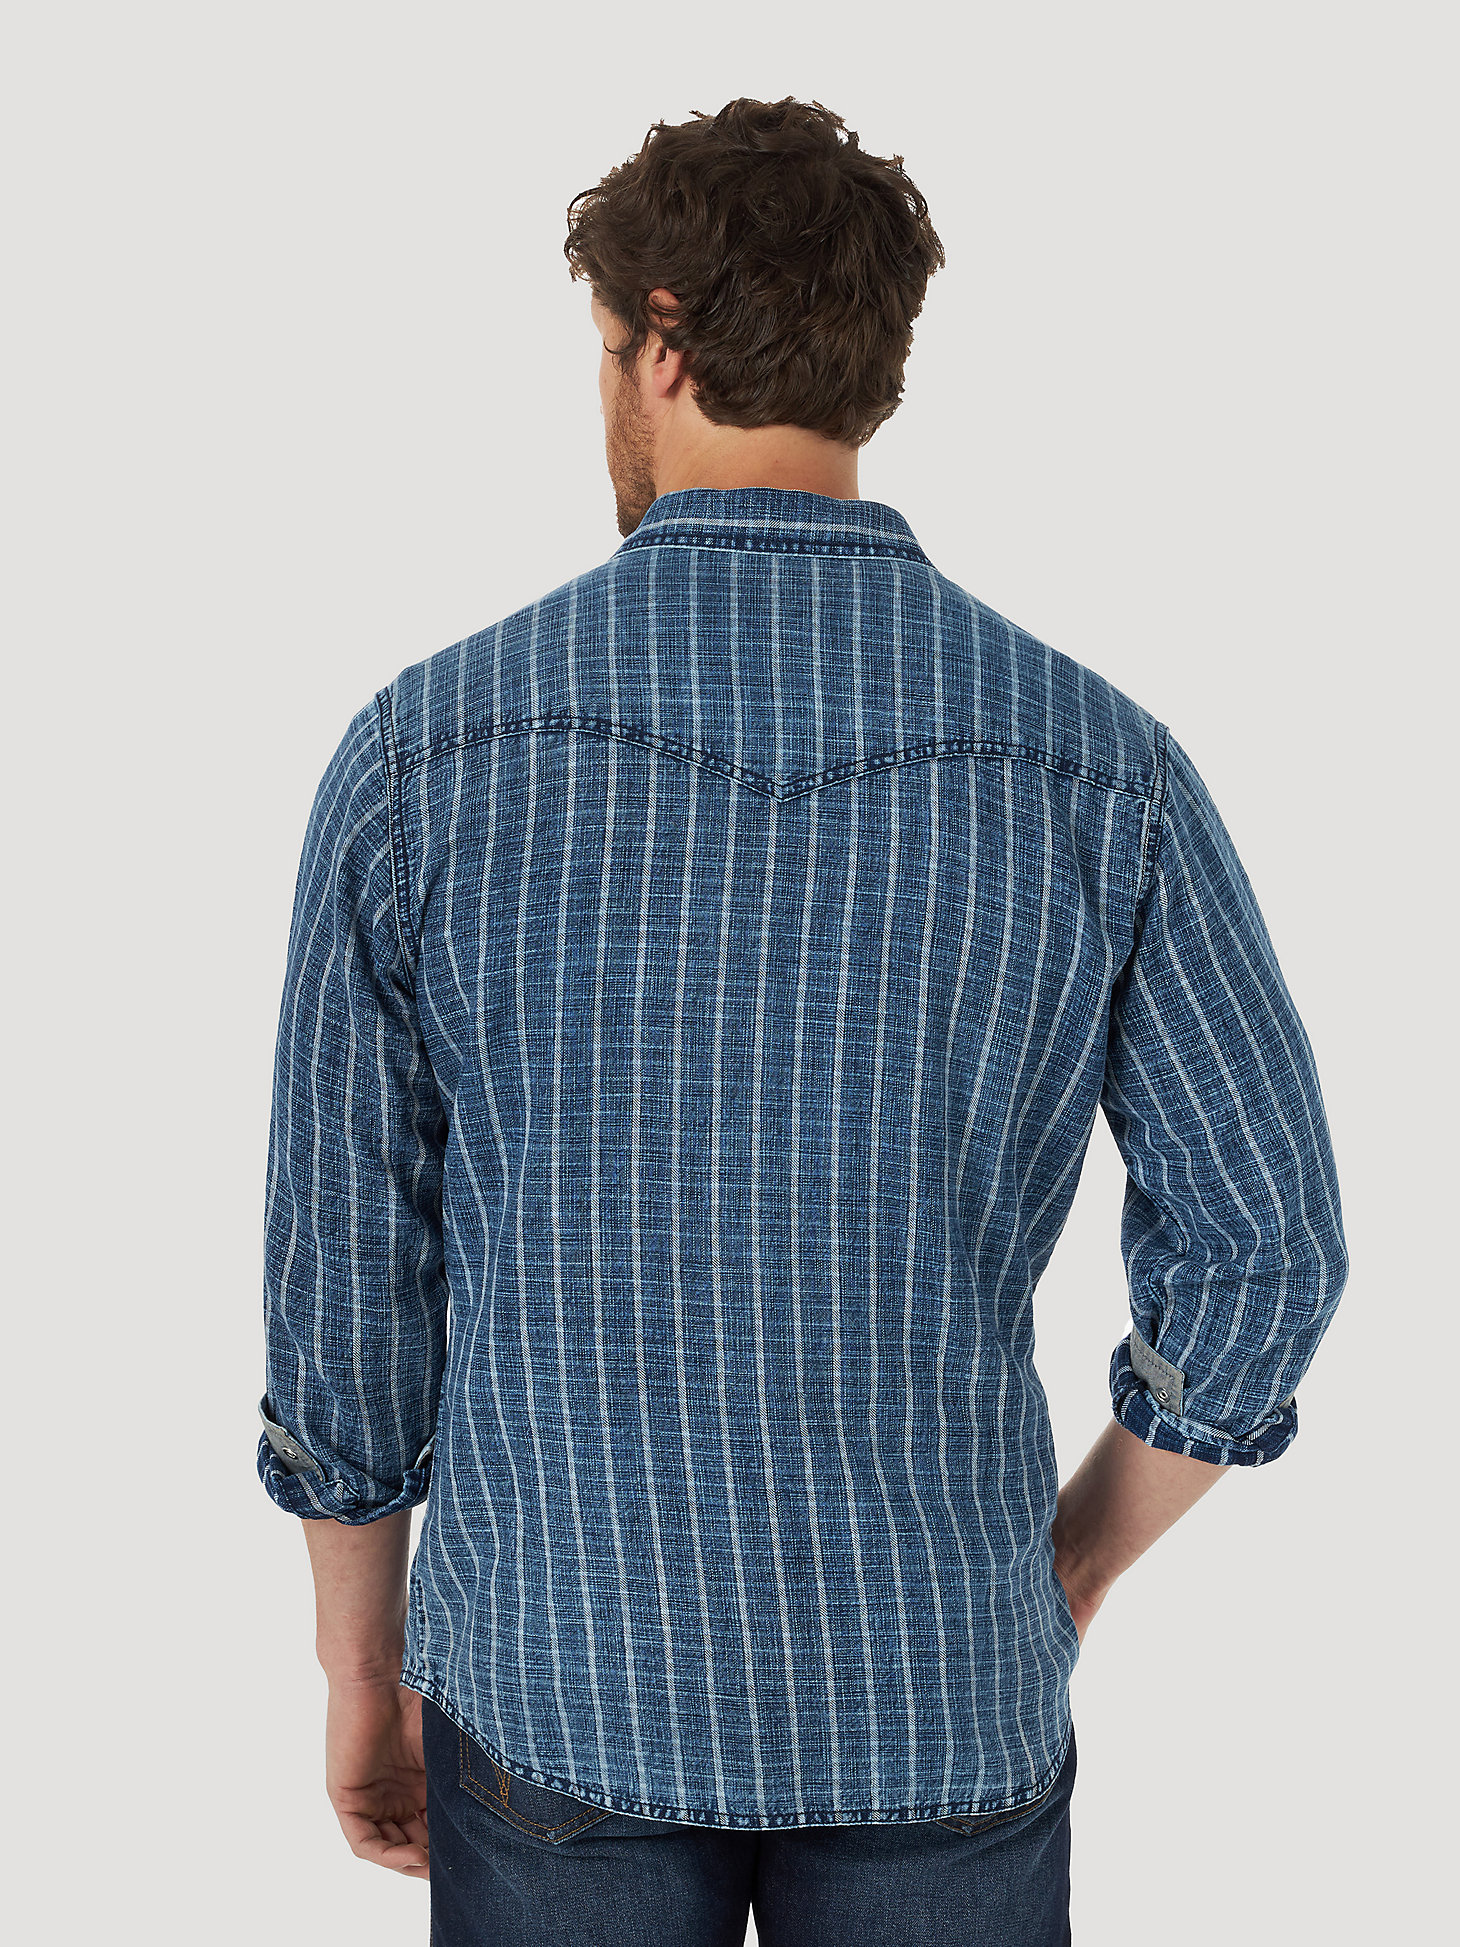 Men's Wrangler Retro® Denim Stripe Long Sleeve Snap Shirt in Blue/White alternative view 1